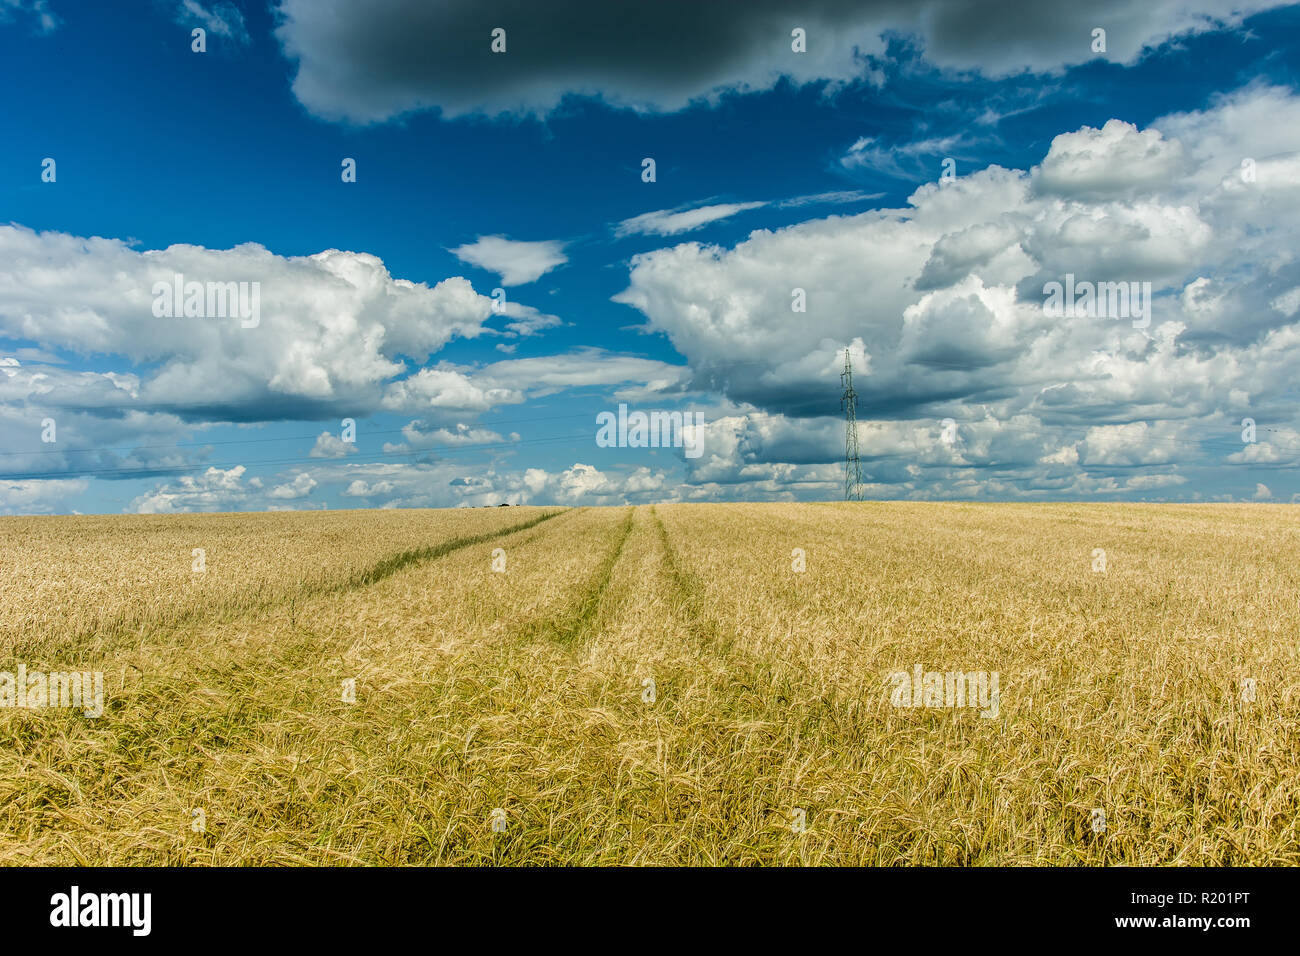 Technologischen Pfad im Feld, Horizont und Wolken im Himmel Stockfoto